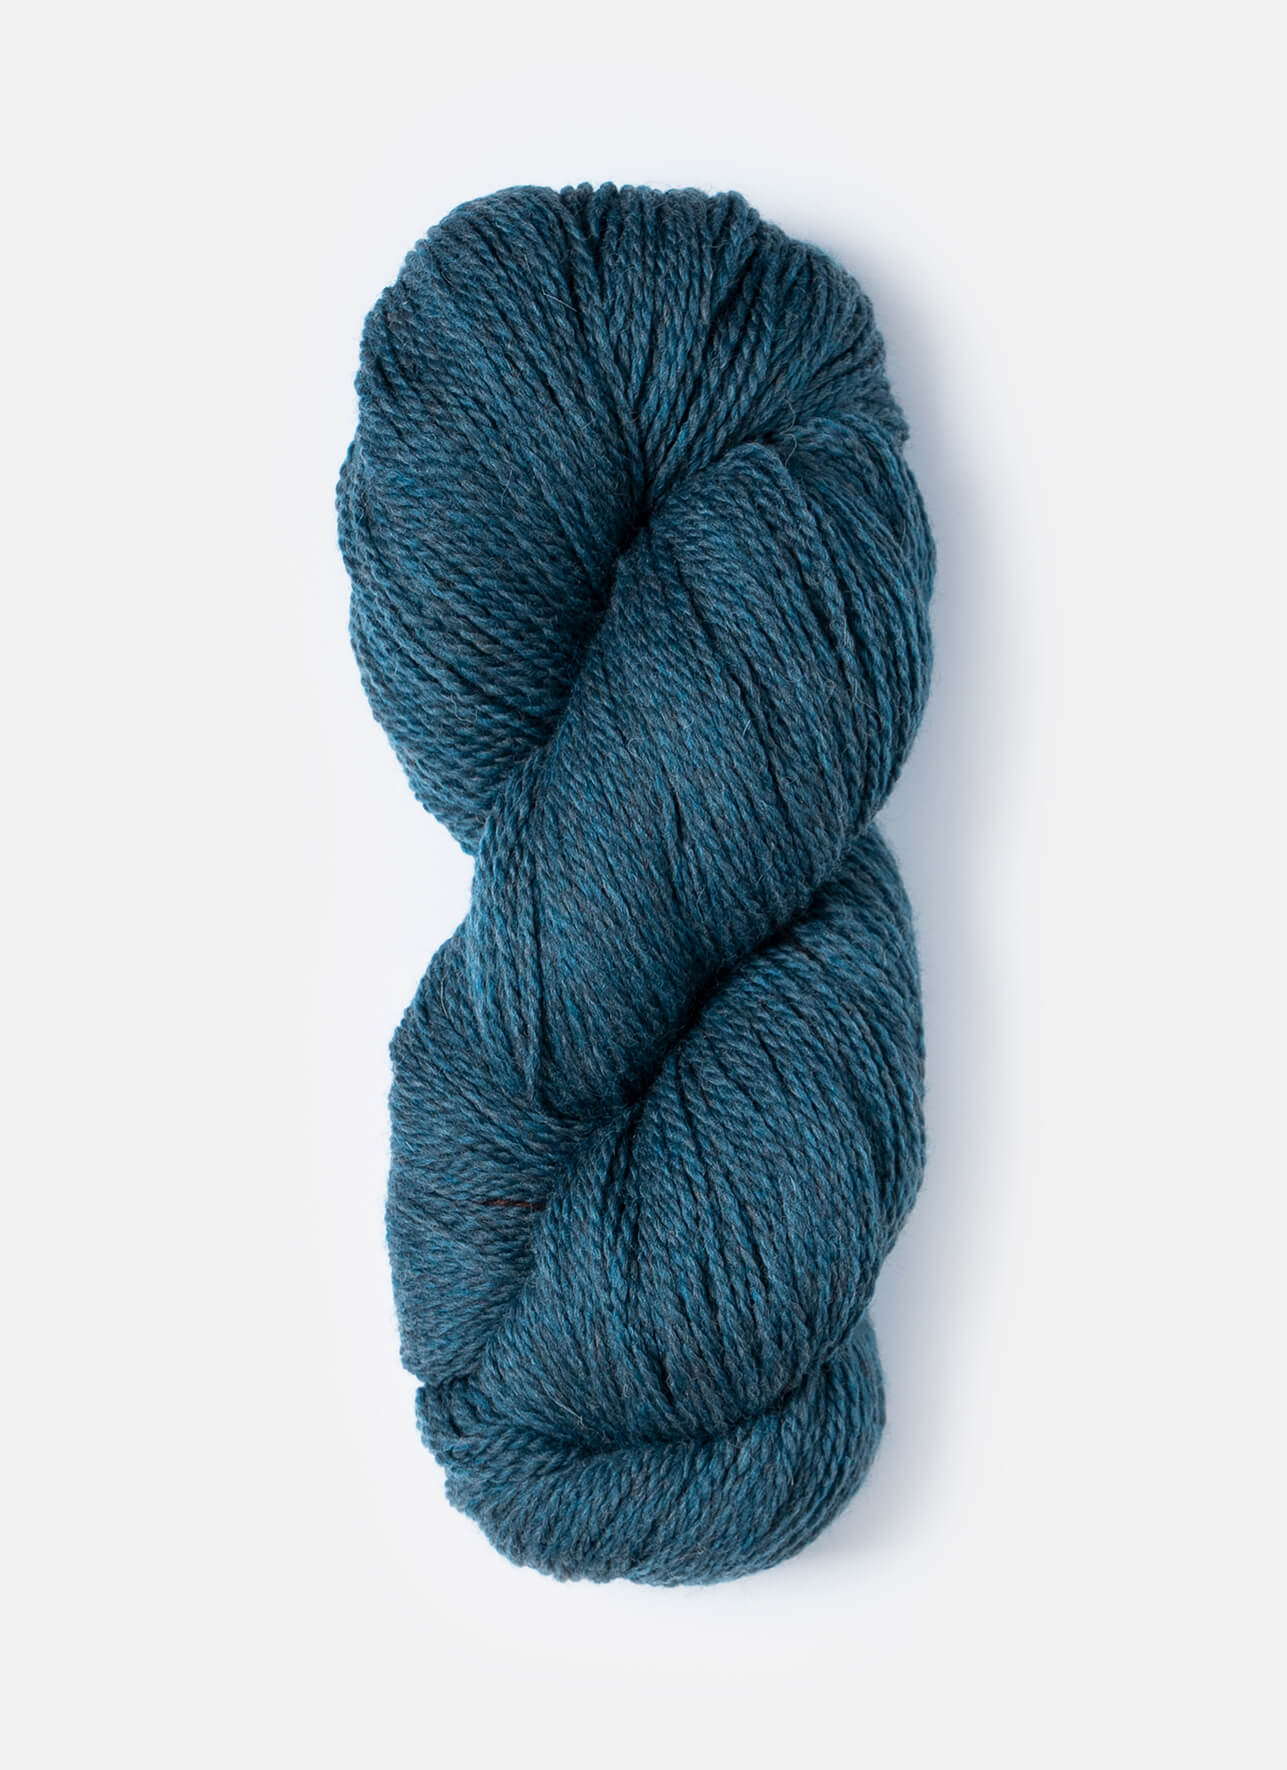 Blue Sky Fibers Woolstok 150 gram wool yarn color 1321